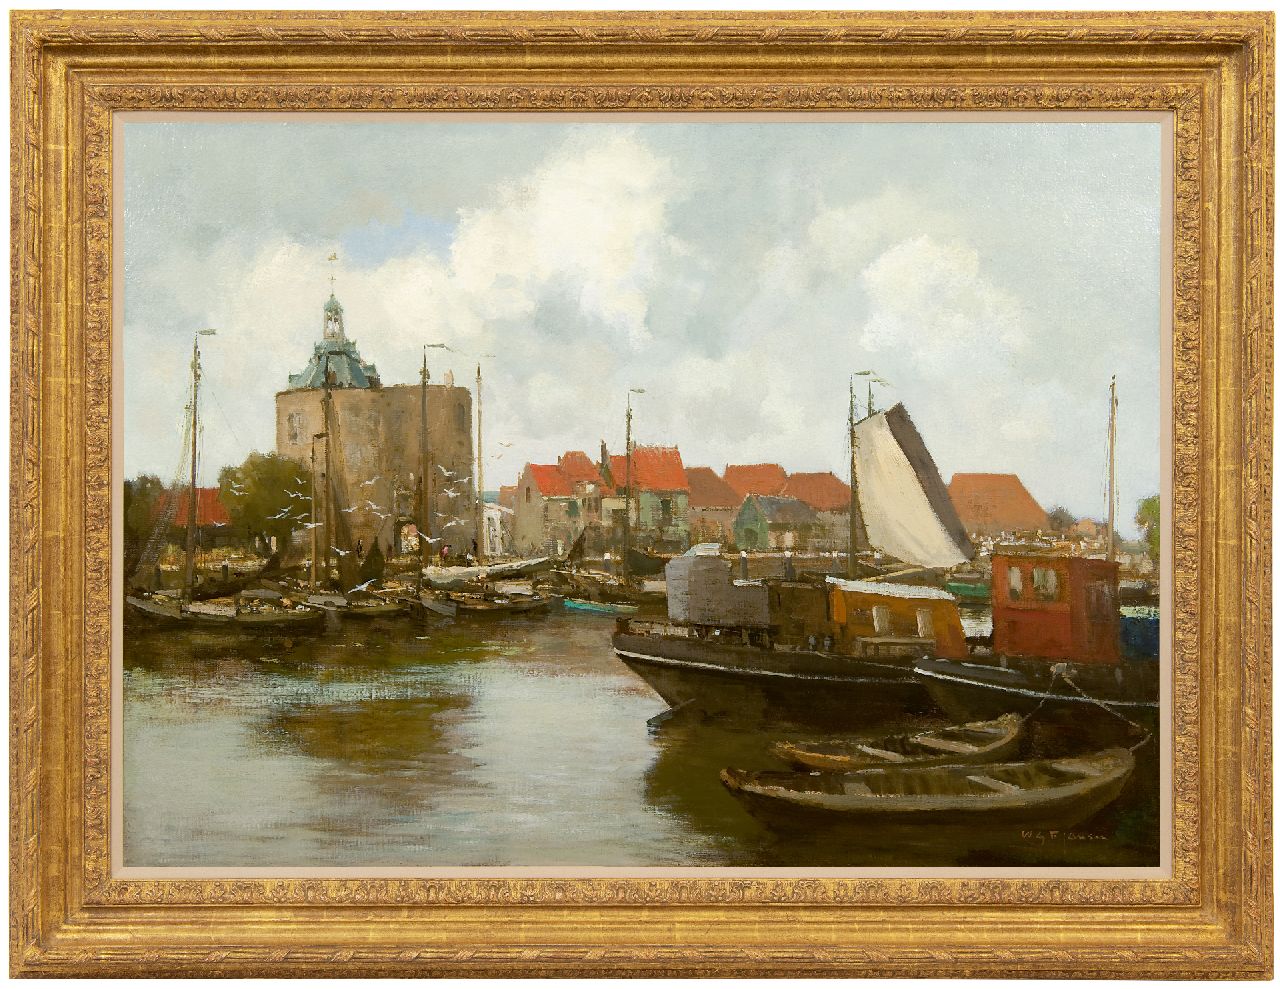 Jansen W.G.F.  | 'Willem' George Frederik Jansen | Schilderijen te koop aangeboden | De haven van Enkhuizen met de Drommedaris, olieverf op doek 71,8 x 99,3 cm, gesigneerd rechtsonder